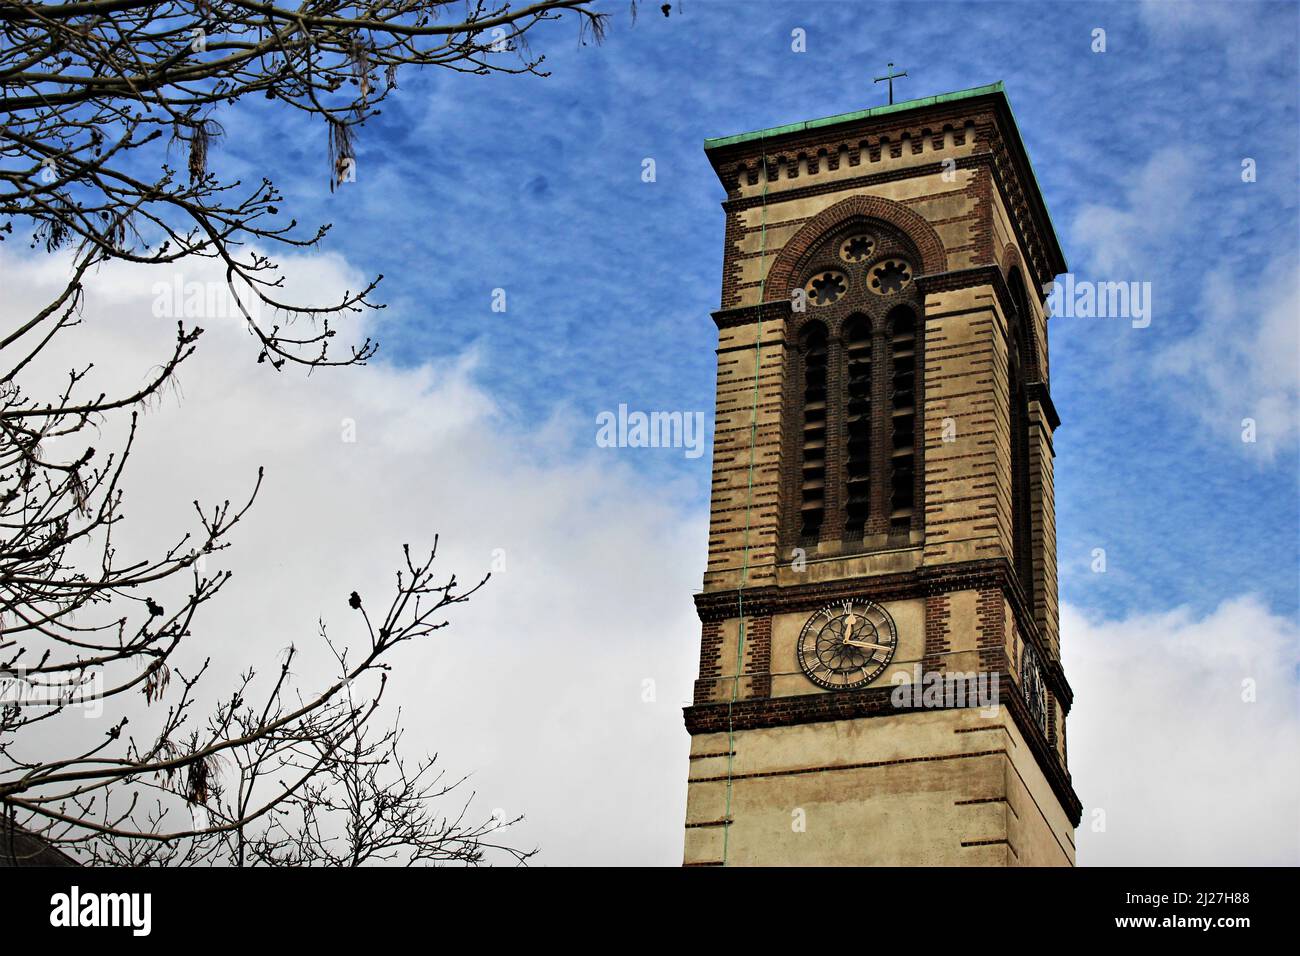 Turm der St. Barnabas Kirche in der Stadt von Oxford. Entworfen vom Architekten Arthur Blomfield, ein klassisches Beispiel für Renaissance-Architektur. Stockfoto